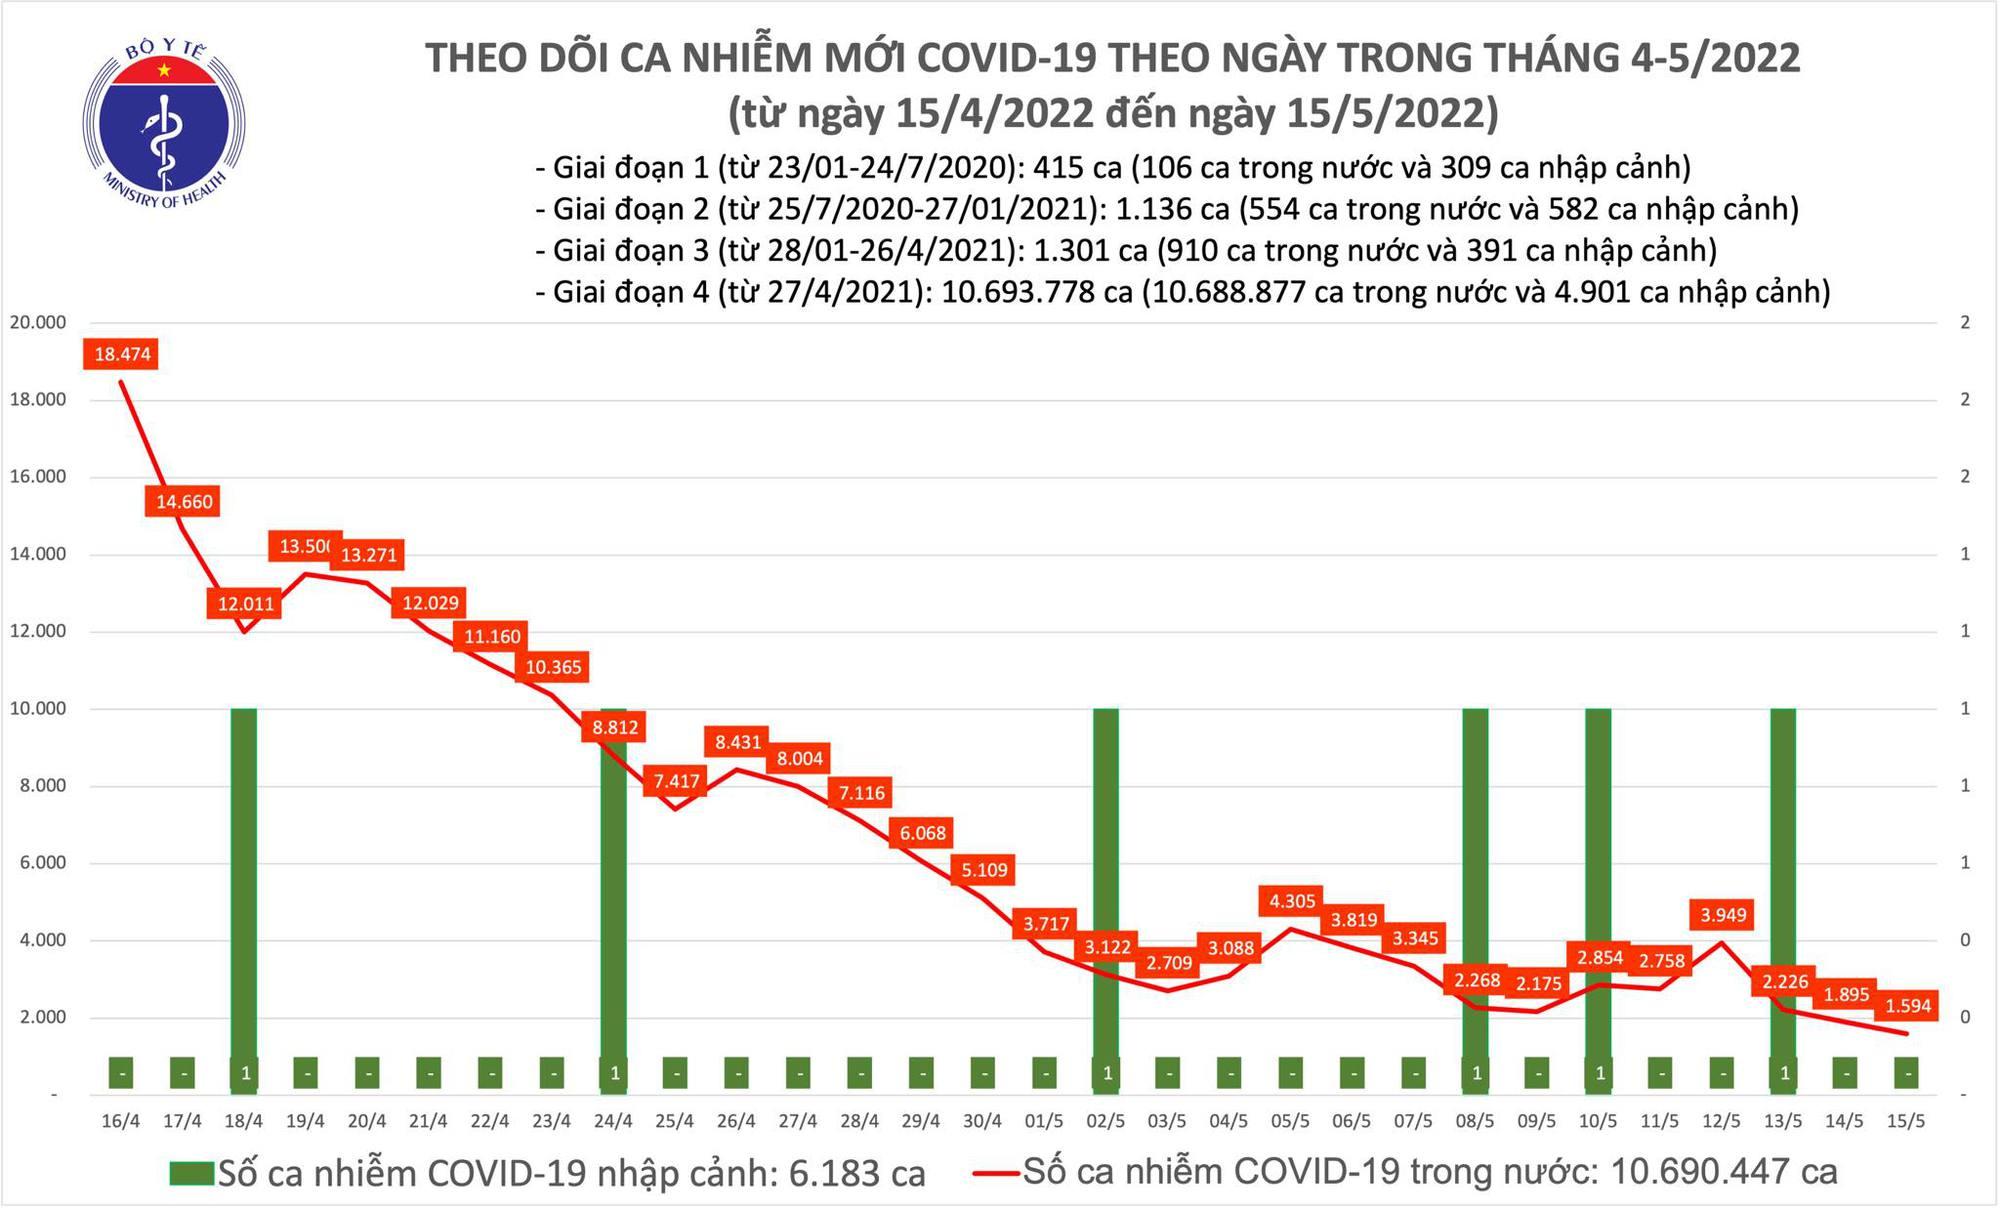 Ngày 15/5: Tin vui chống dịch, ca COVID-19 mới giảm, số khỏi bệnh nhiều gấp 3 số mắc, không có F0 tử vong - Ảnh 1.